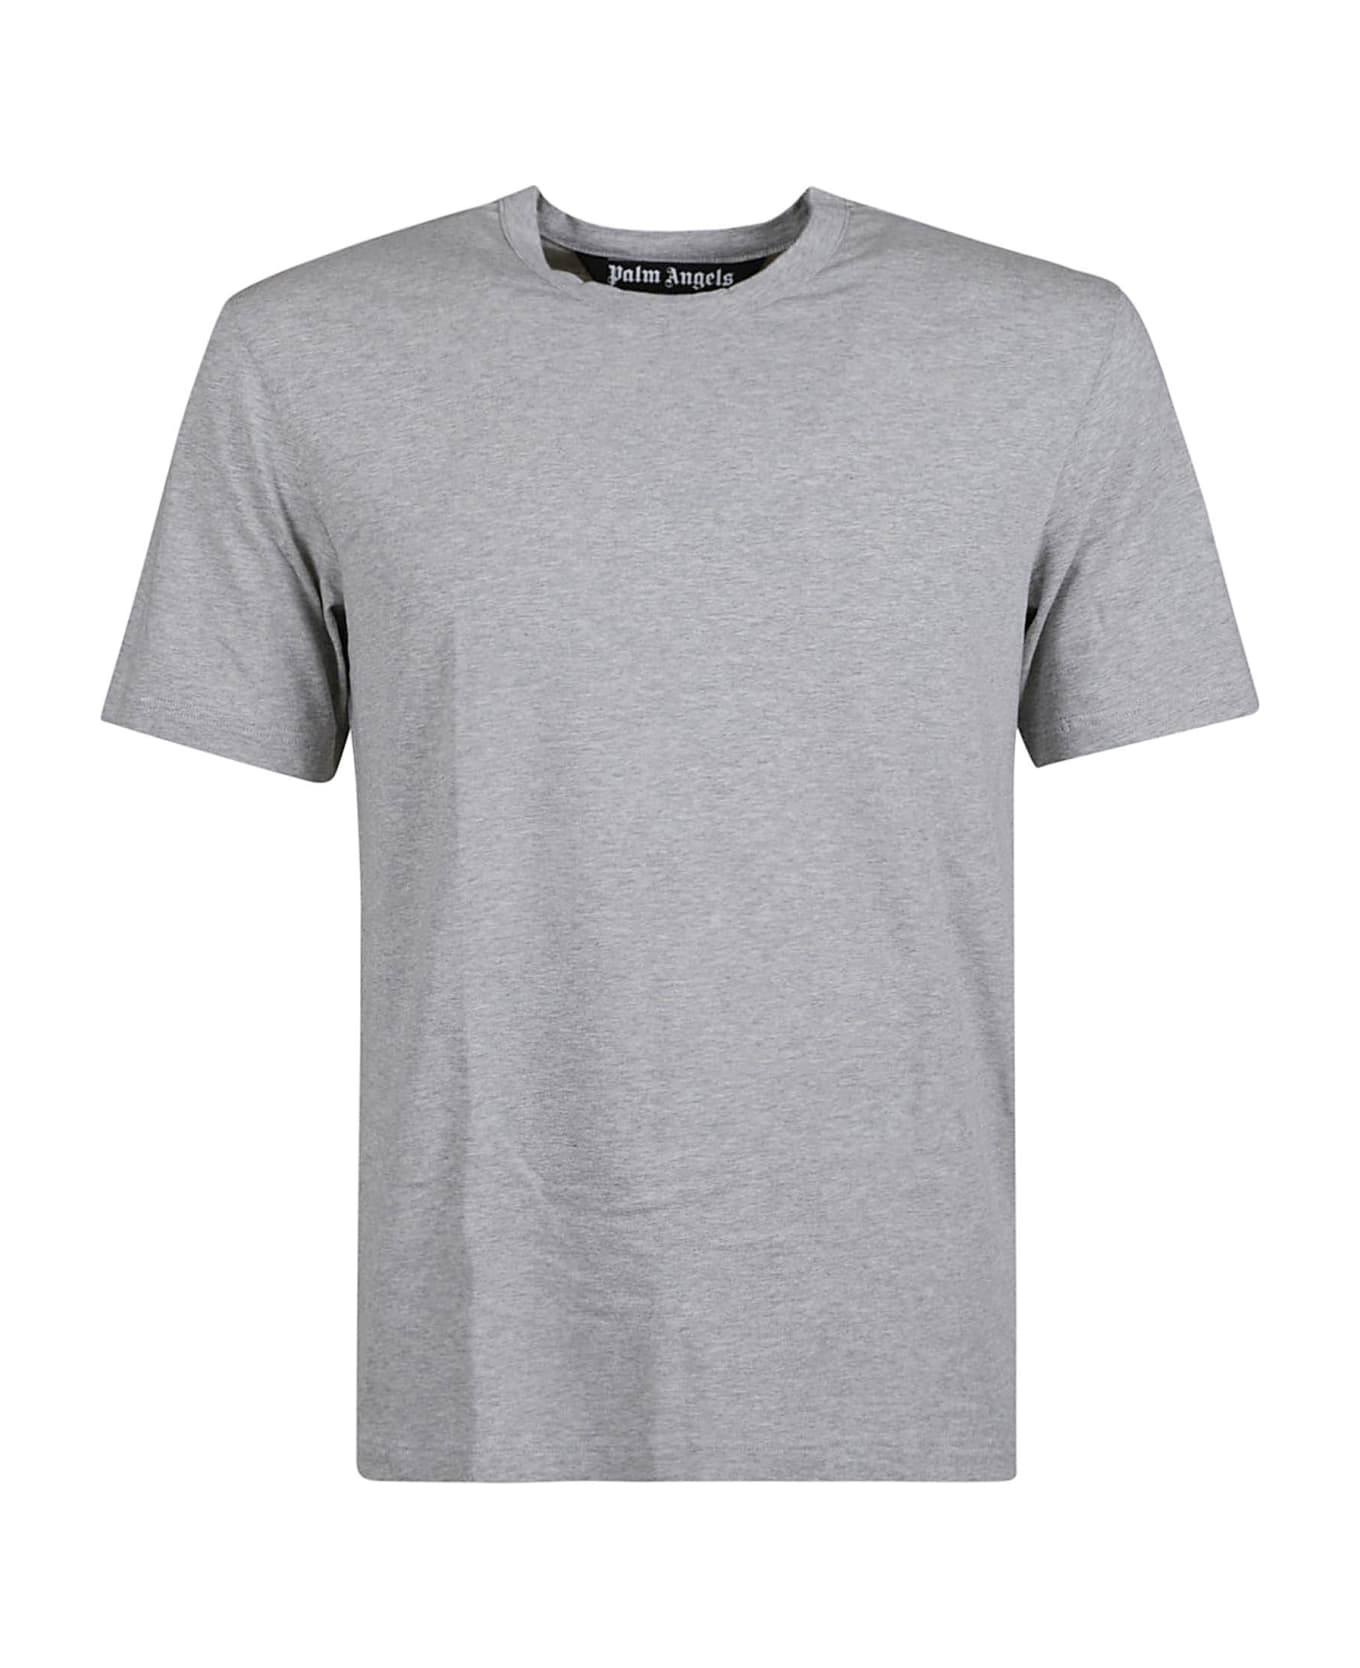 Palm Angels Round Neck T-shirt - Melange grey Tシャツ